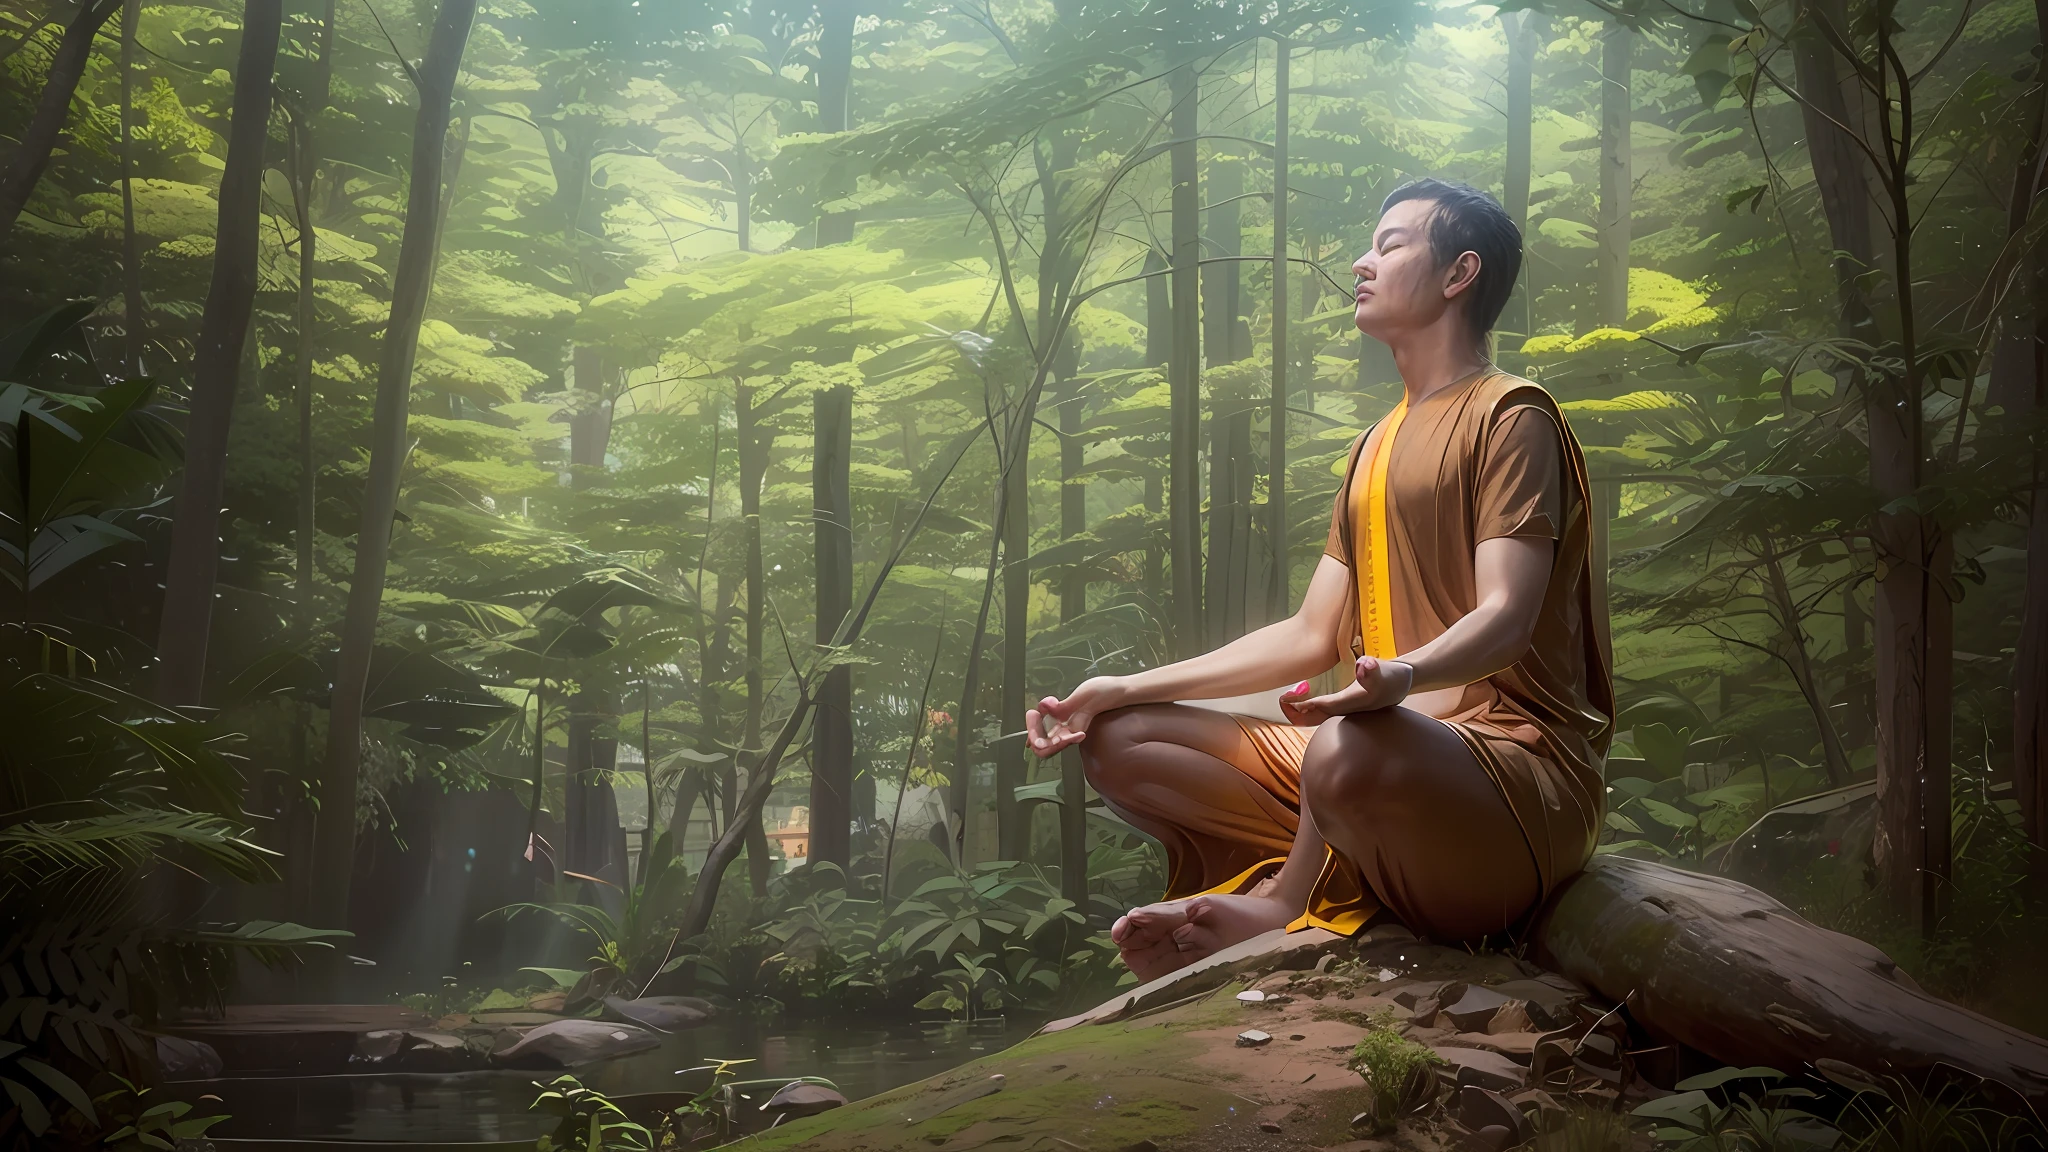 Há um homem sentado em uma rocha na floresta, meditação pose, Meditando, meditando em posição de lótus, pose de meditação, Sentado não Forrest, meditação, Meditativo, orar meditando, Meditação Zen, yoga meditação pose, contemplativo, hindu stages of meditação, Pose Sacral Meditativa, Sukhasana, figura meditando close shot, foto de retrato